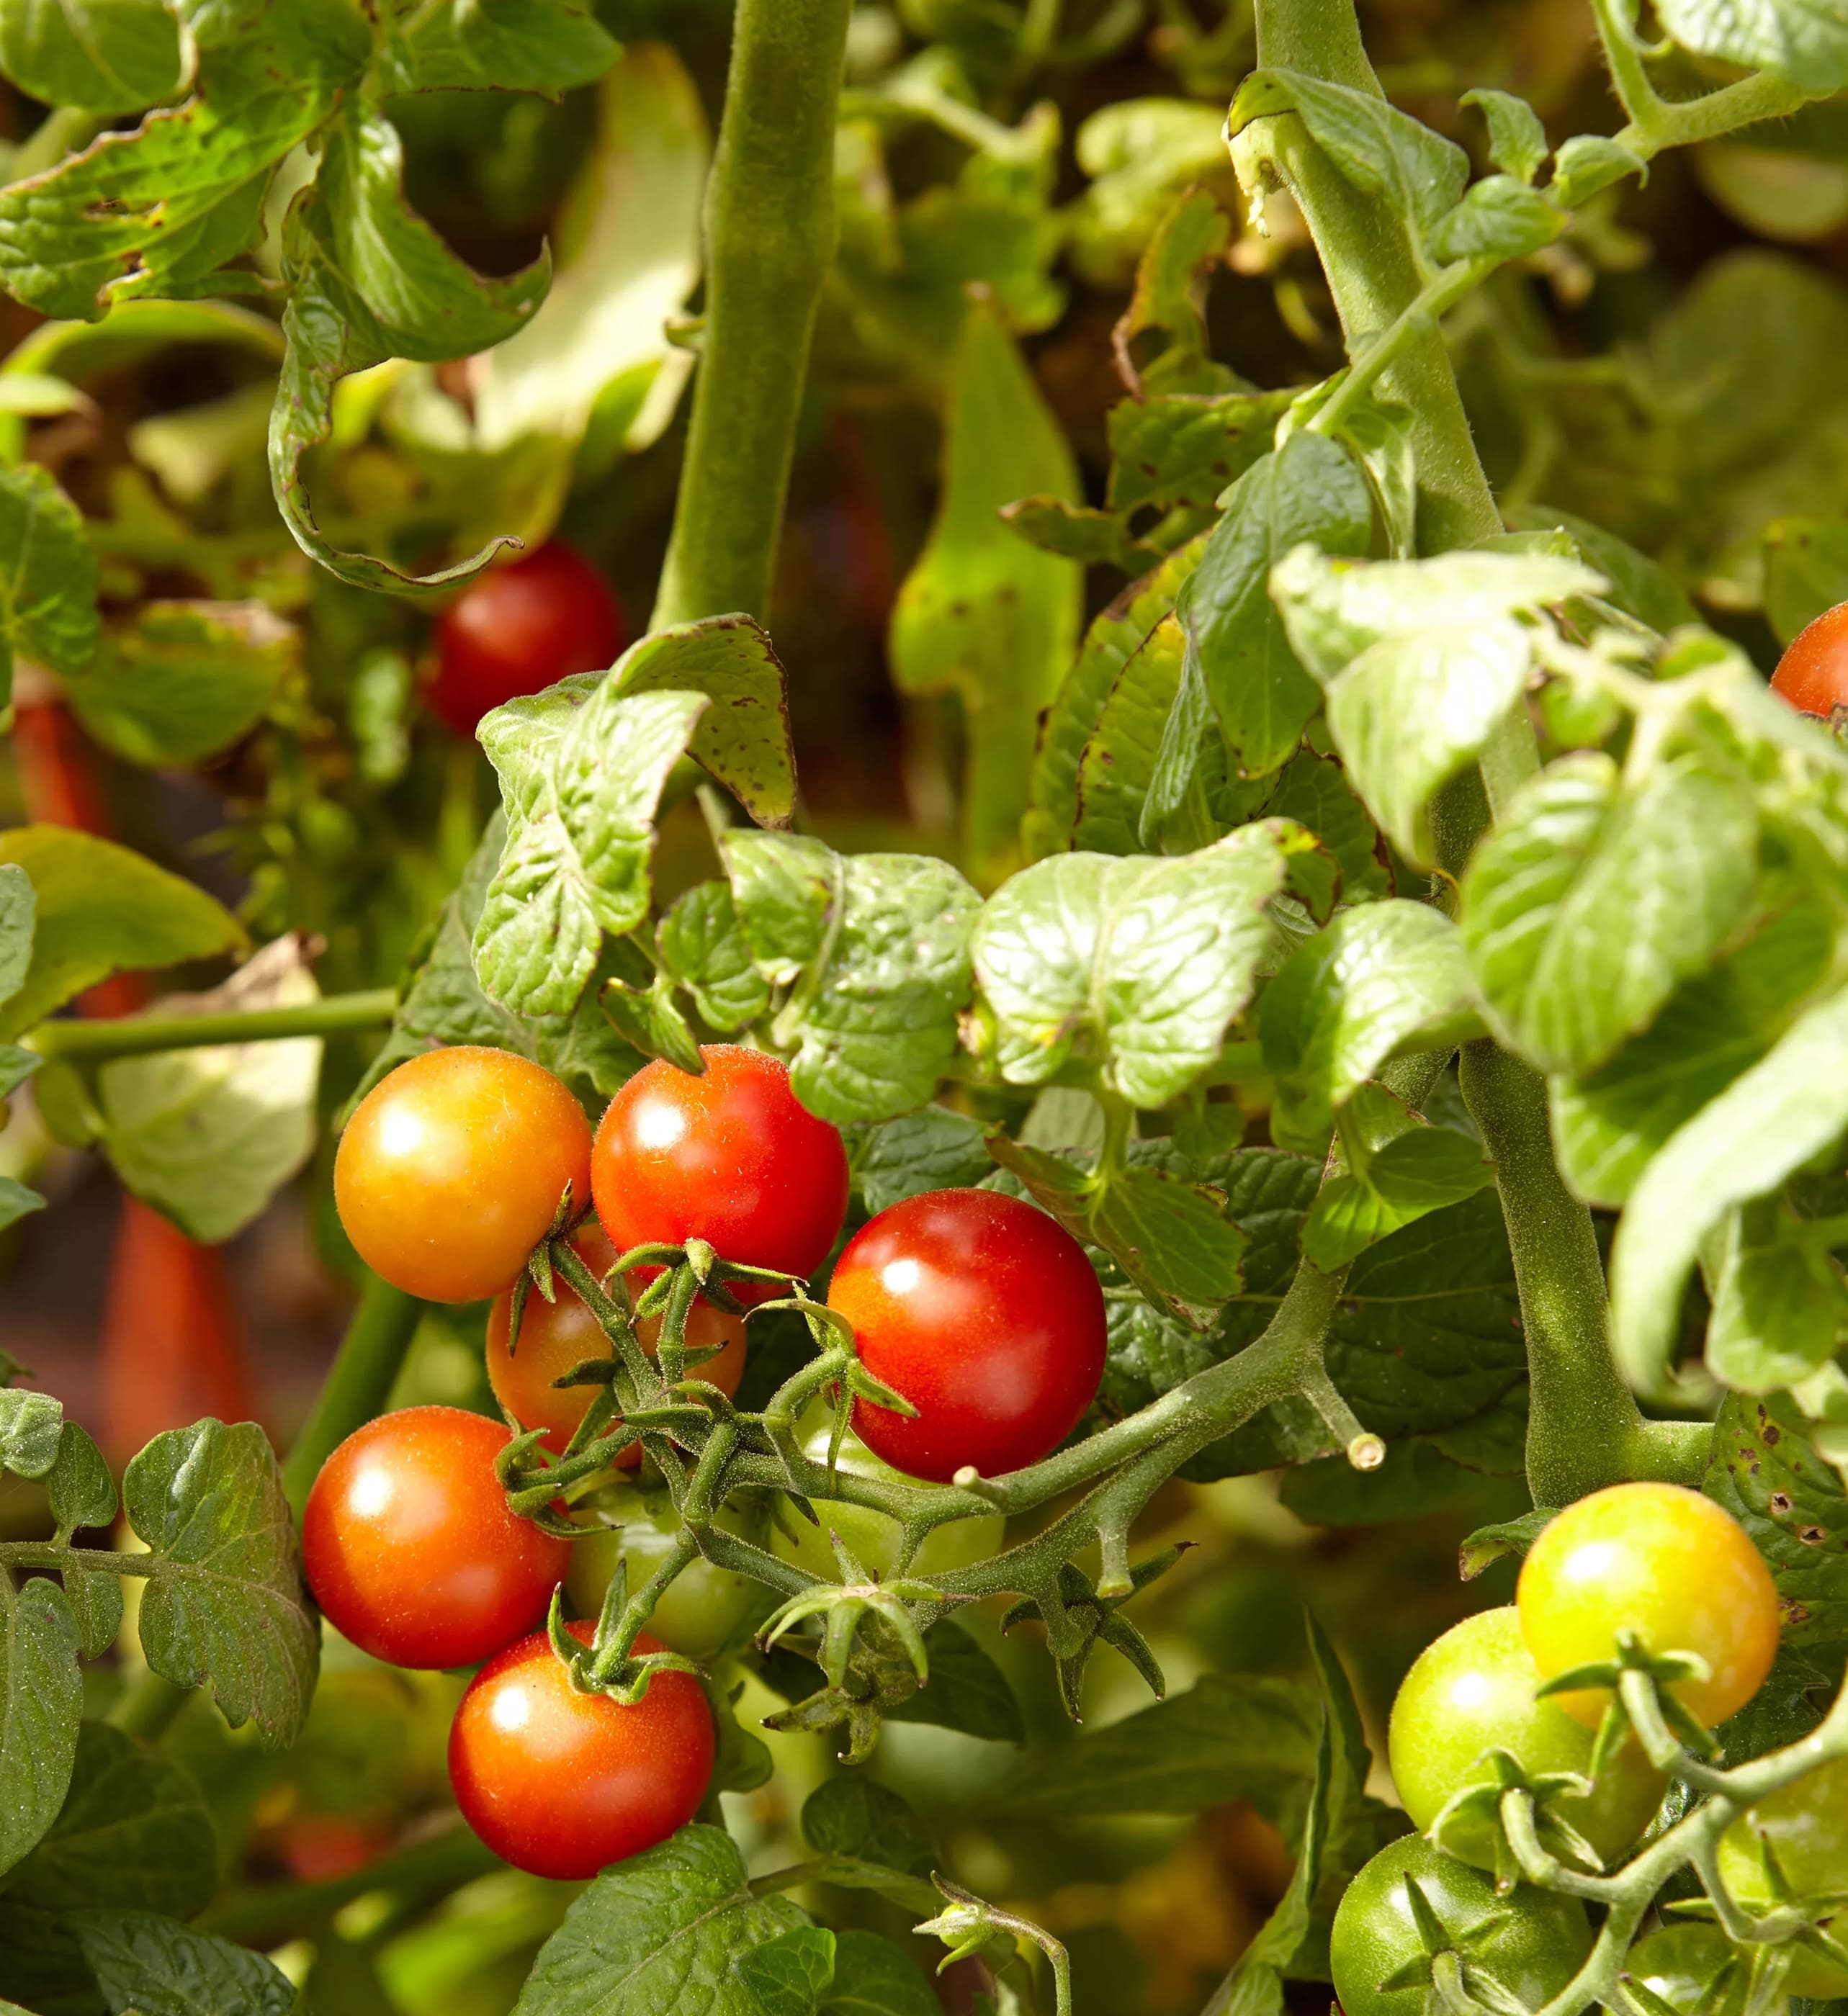 Kuinka usein tomaatteja kastellaan, sekä 6 tomaattien kasteluvinkkiä.